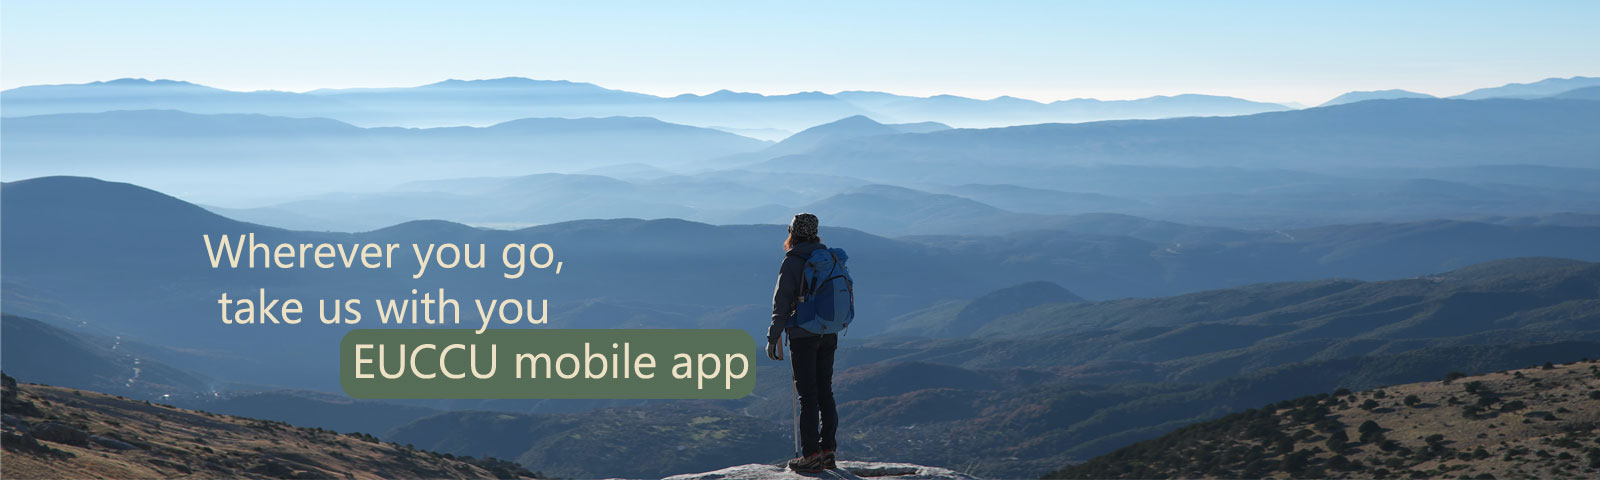 Wherever you go, take us with you. EUCCU Mobile App.